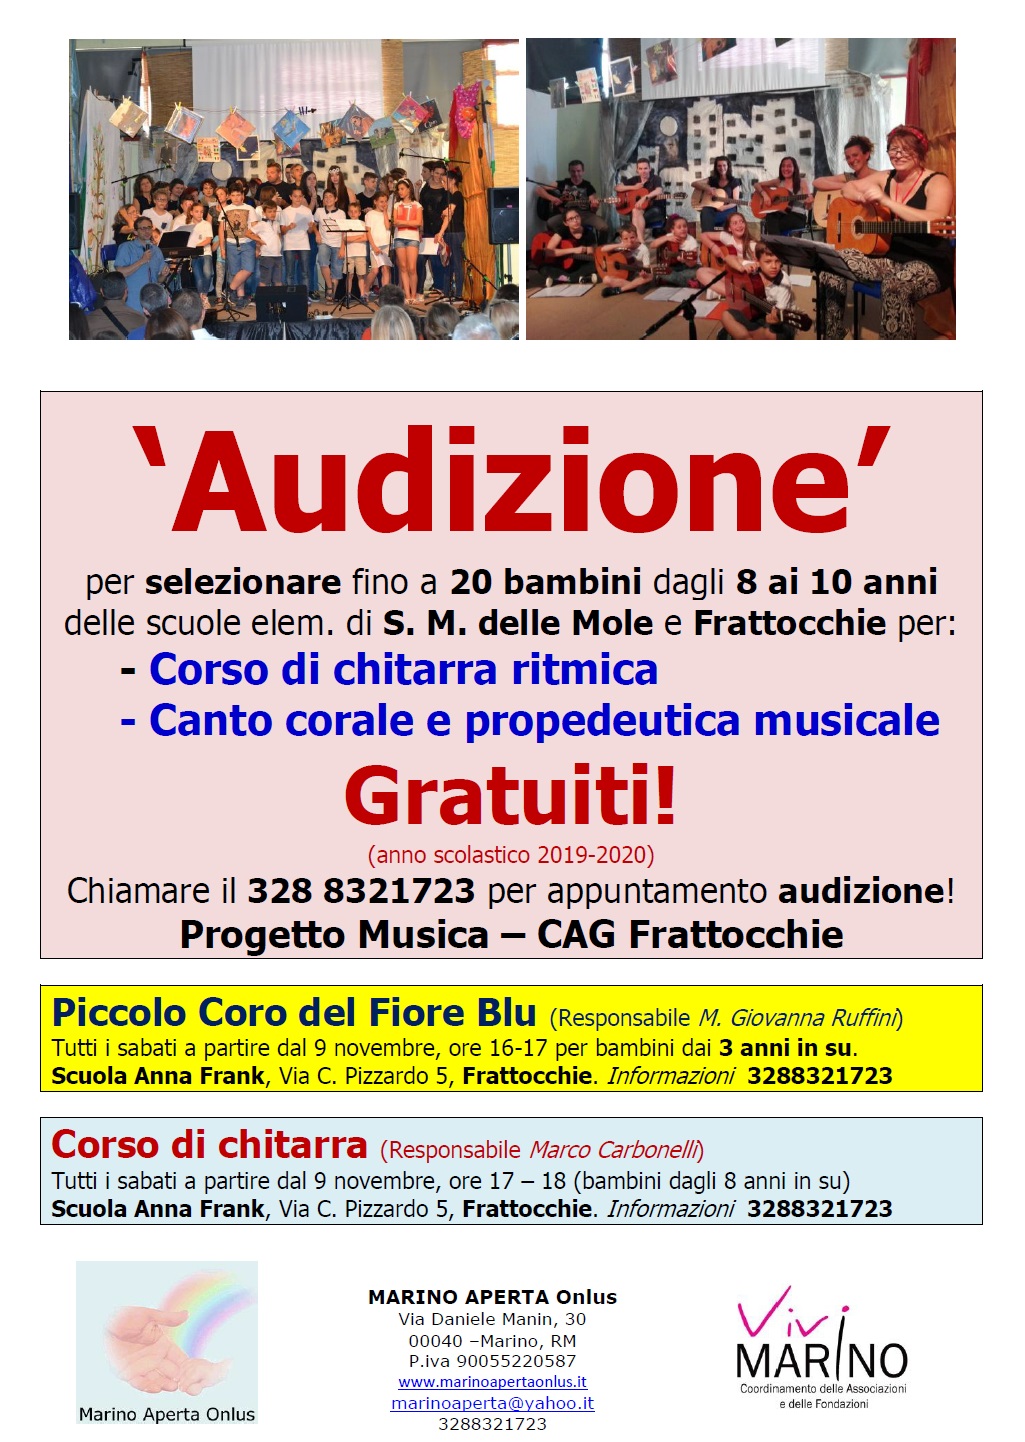 Audizioni per la selezione dei partecipanti ai Corsi di Chitarra e per il Piccolo Coro del Fiore Blu: corsi gratuiti offerti da Marino Aperta Onlus!